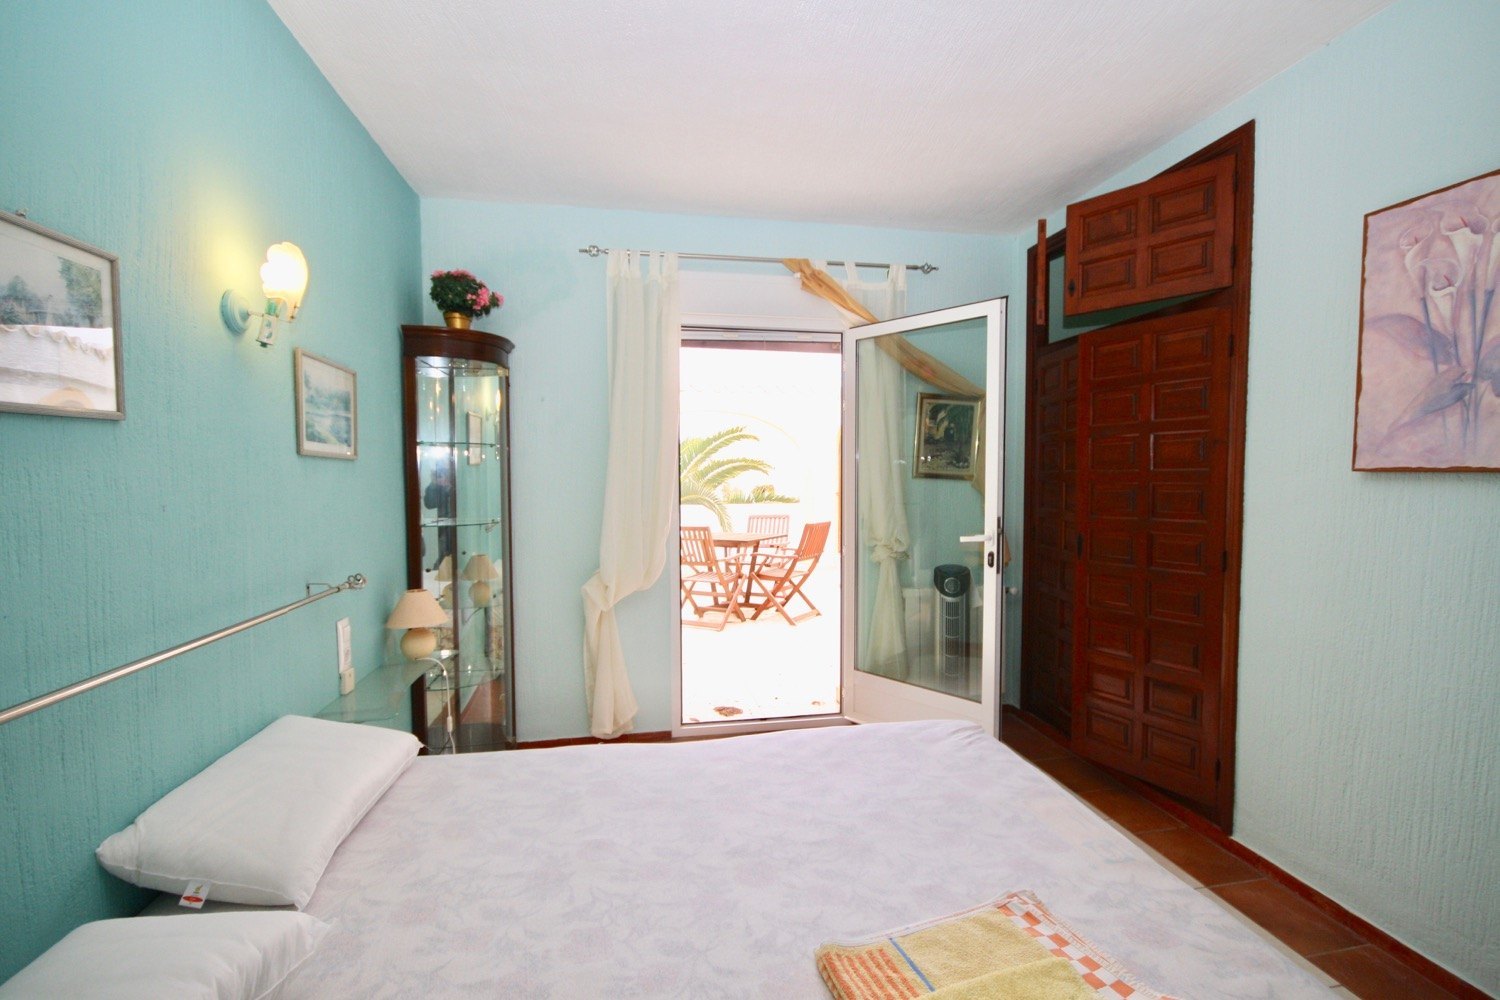 Voor verkoop villa met veel ruimte en zeezicht in Javea